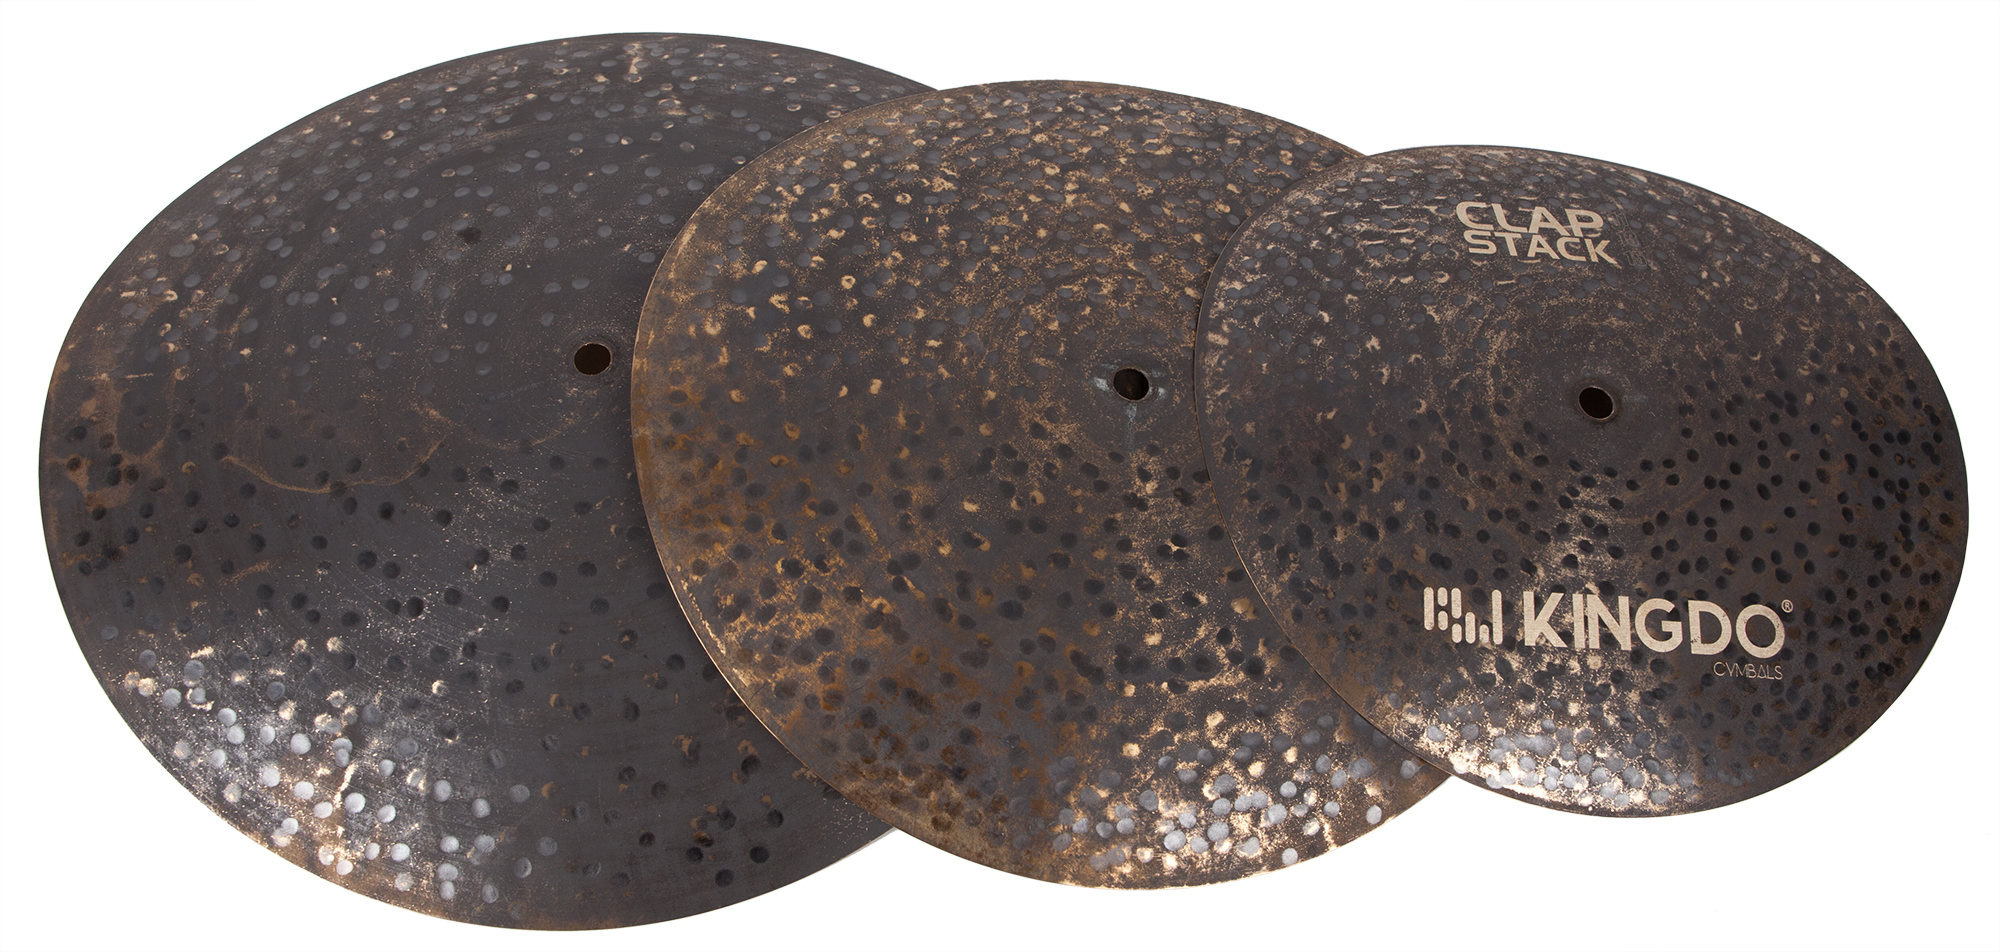 Тарелки, барабаны для ударных установок KINGDO CLAP STACK CYMBAL тарелки барабаны для ударных установок aisen b20 rock cymbal pack 4 шт